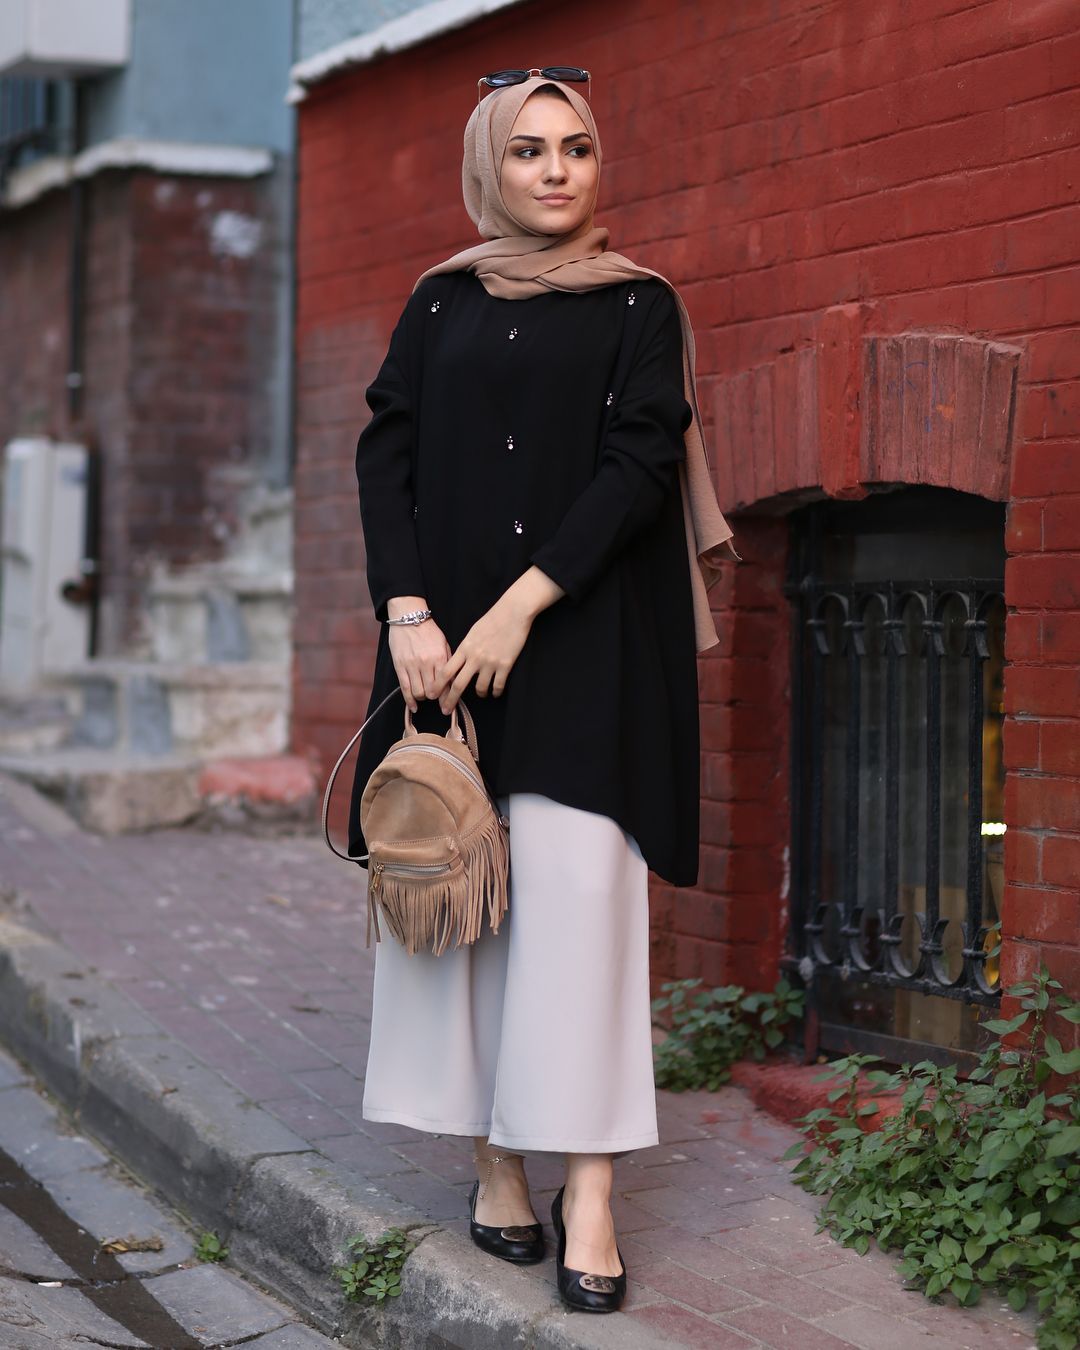 hijab en espa?ol - hijab en espa?ol -   16 style Hijab robe ideas